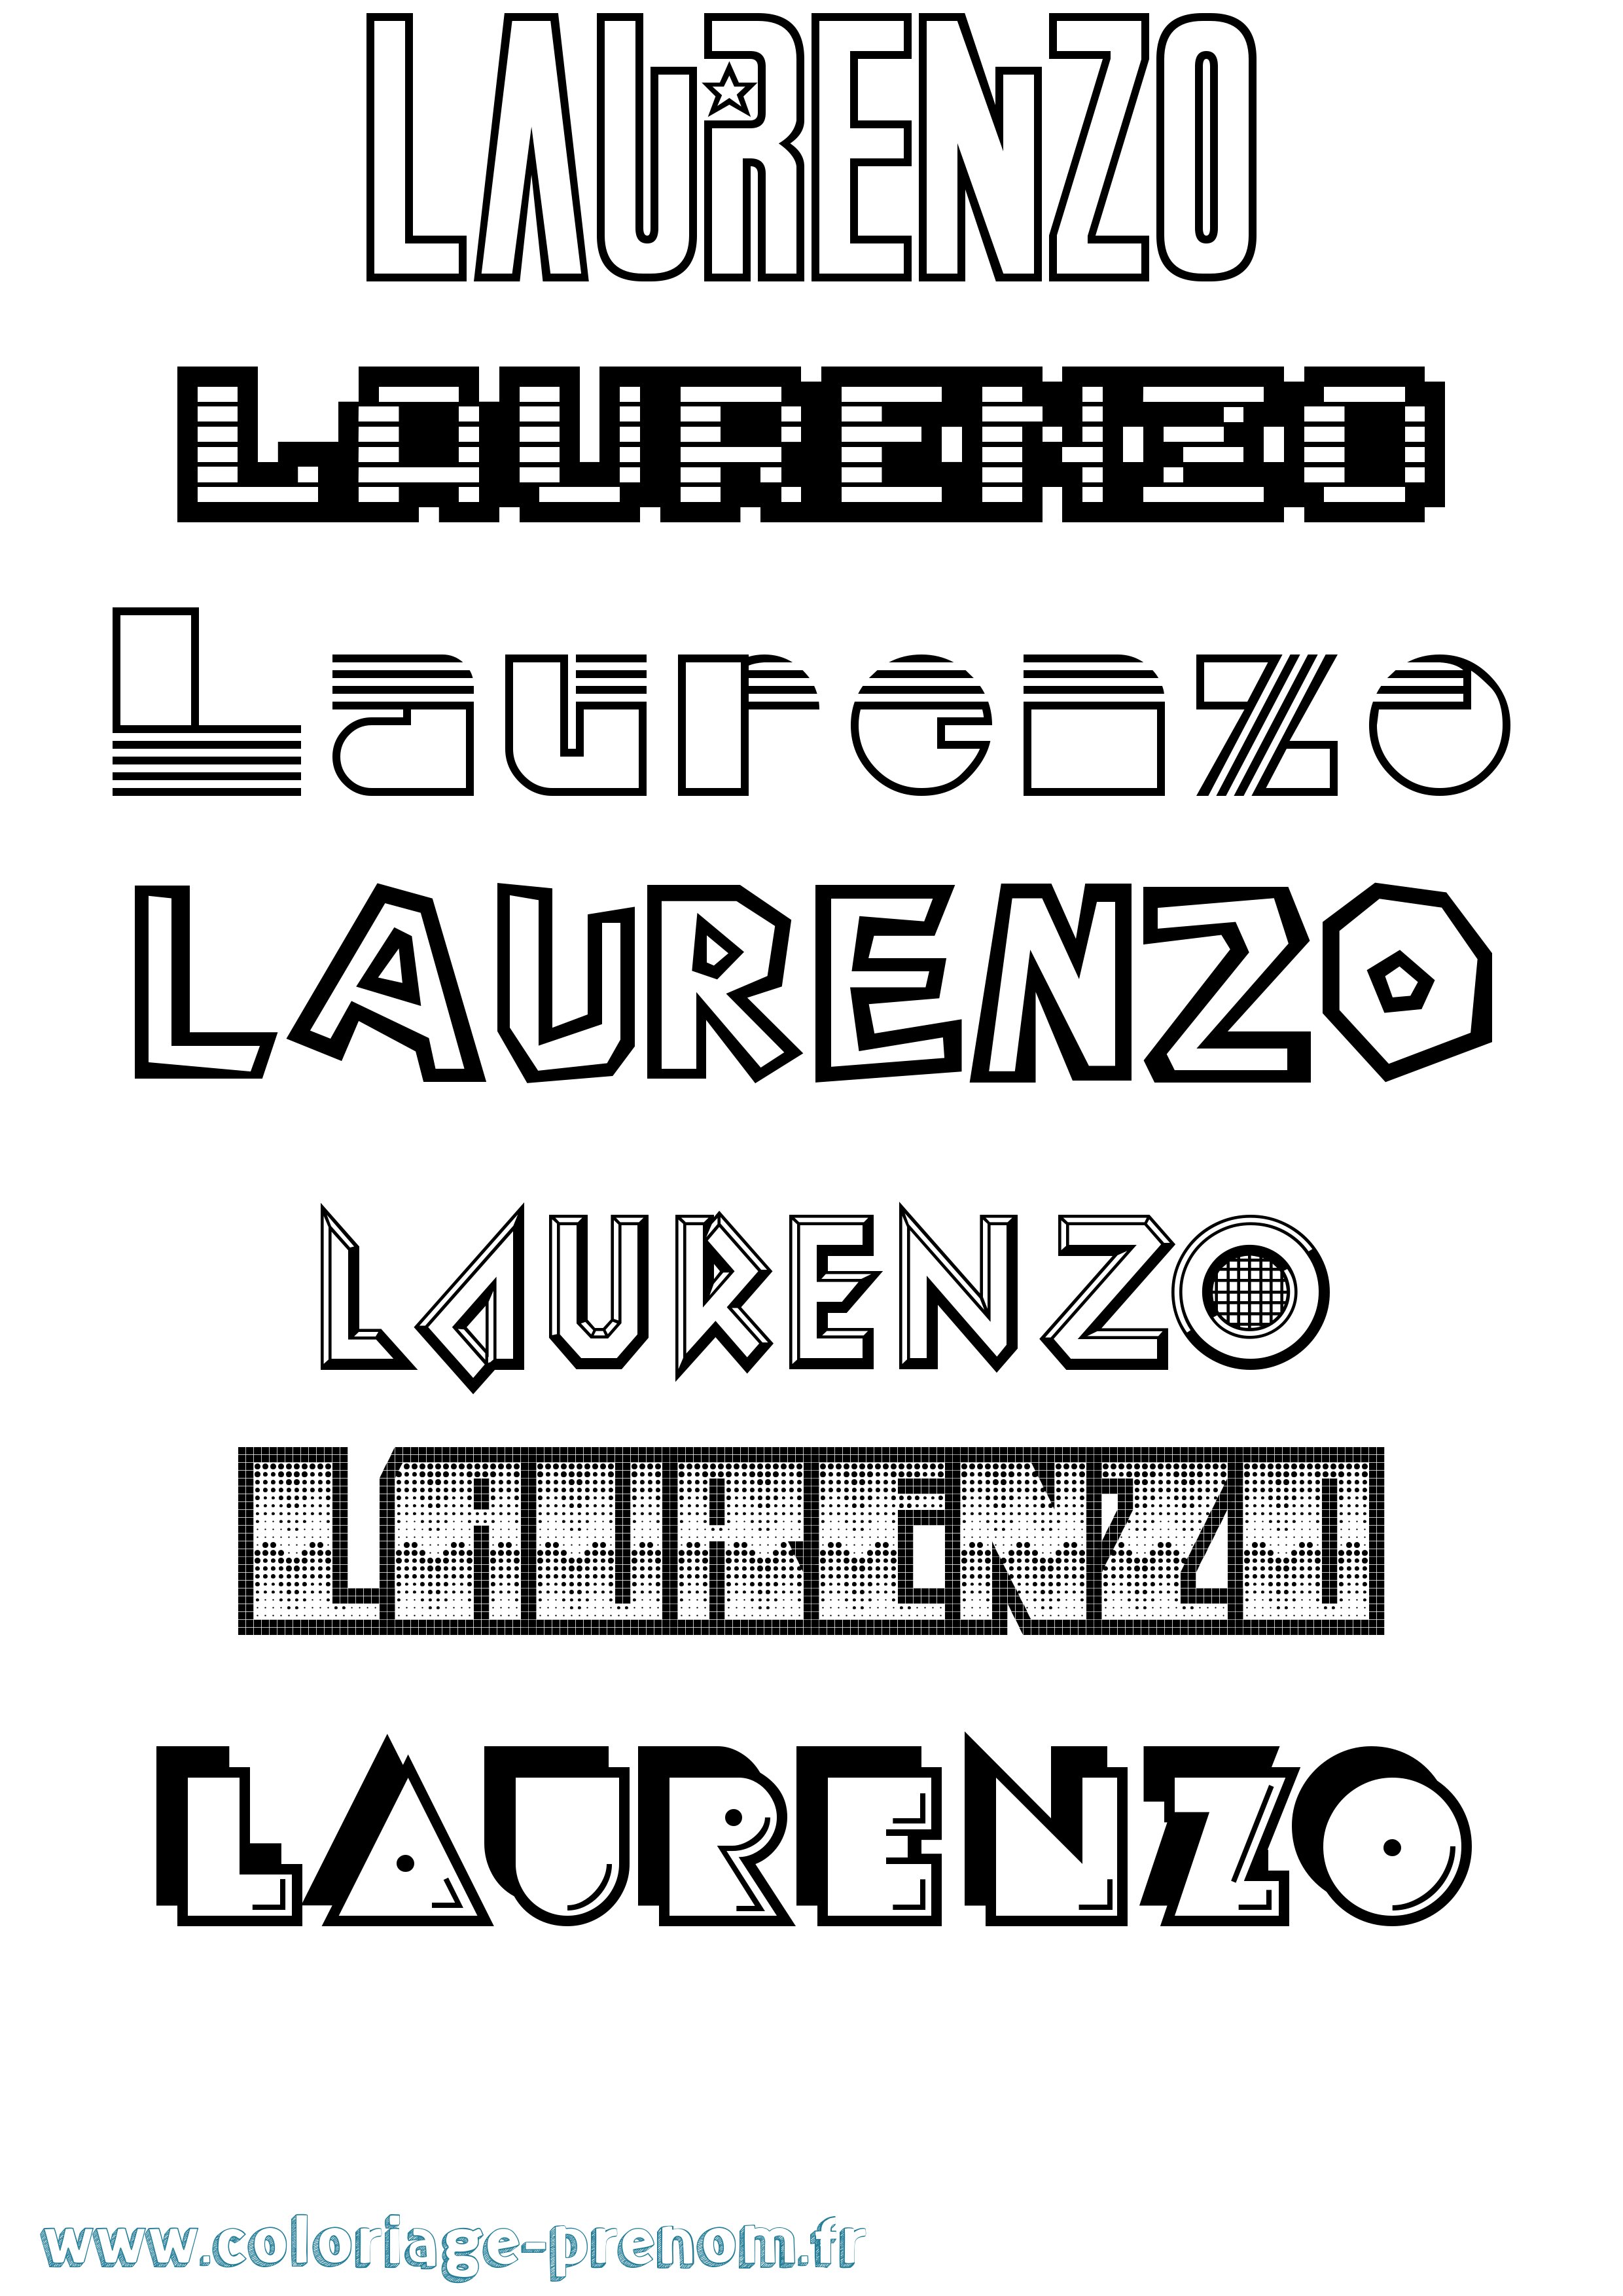 Coloriage prénom Laurenzo Jeux Vidéos